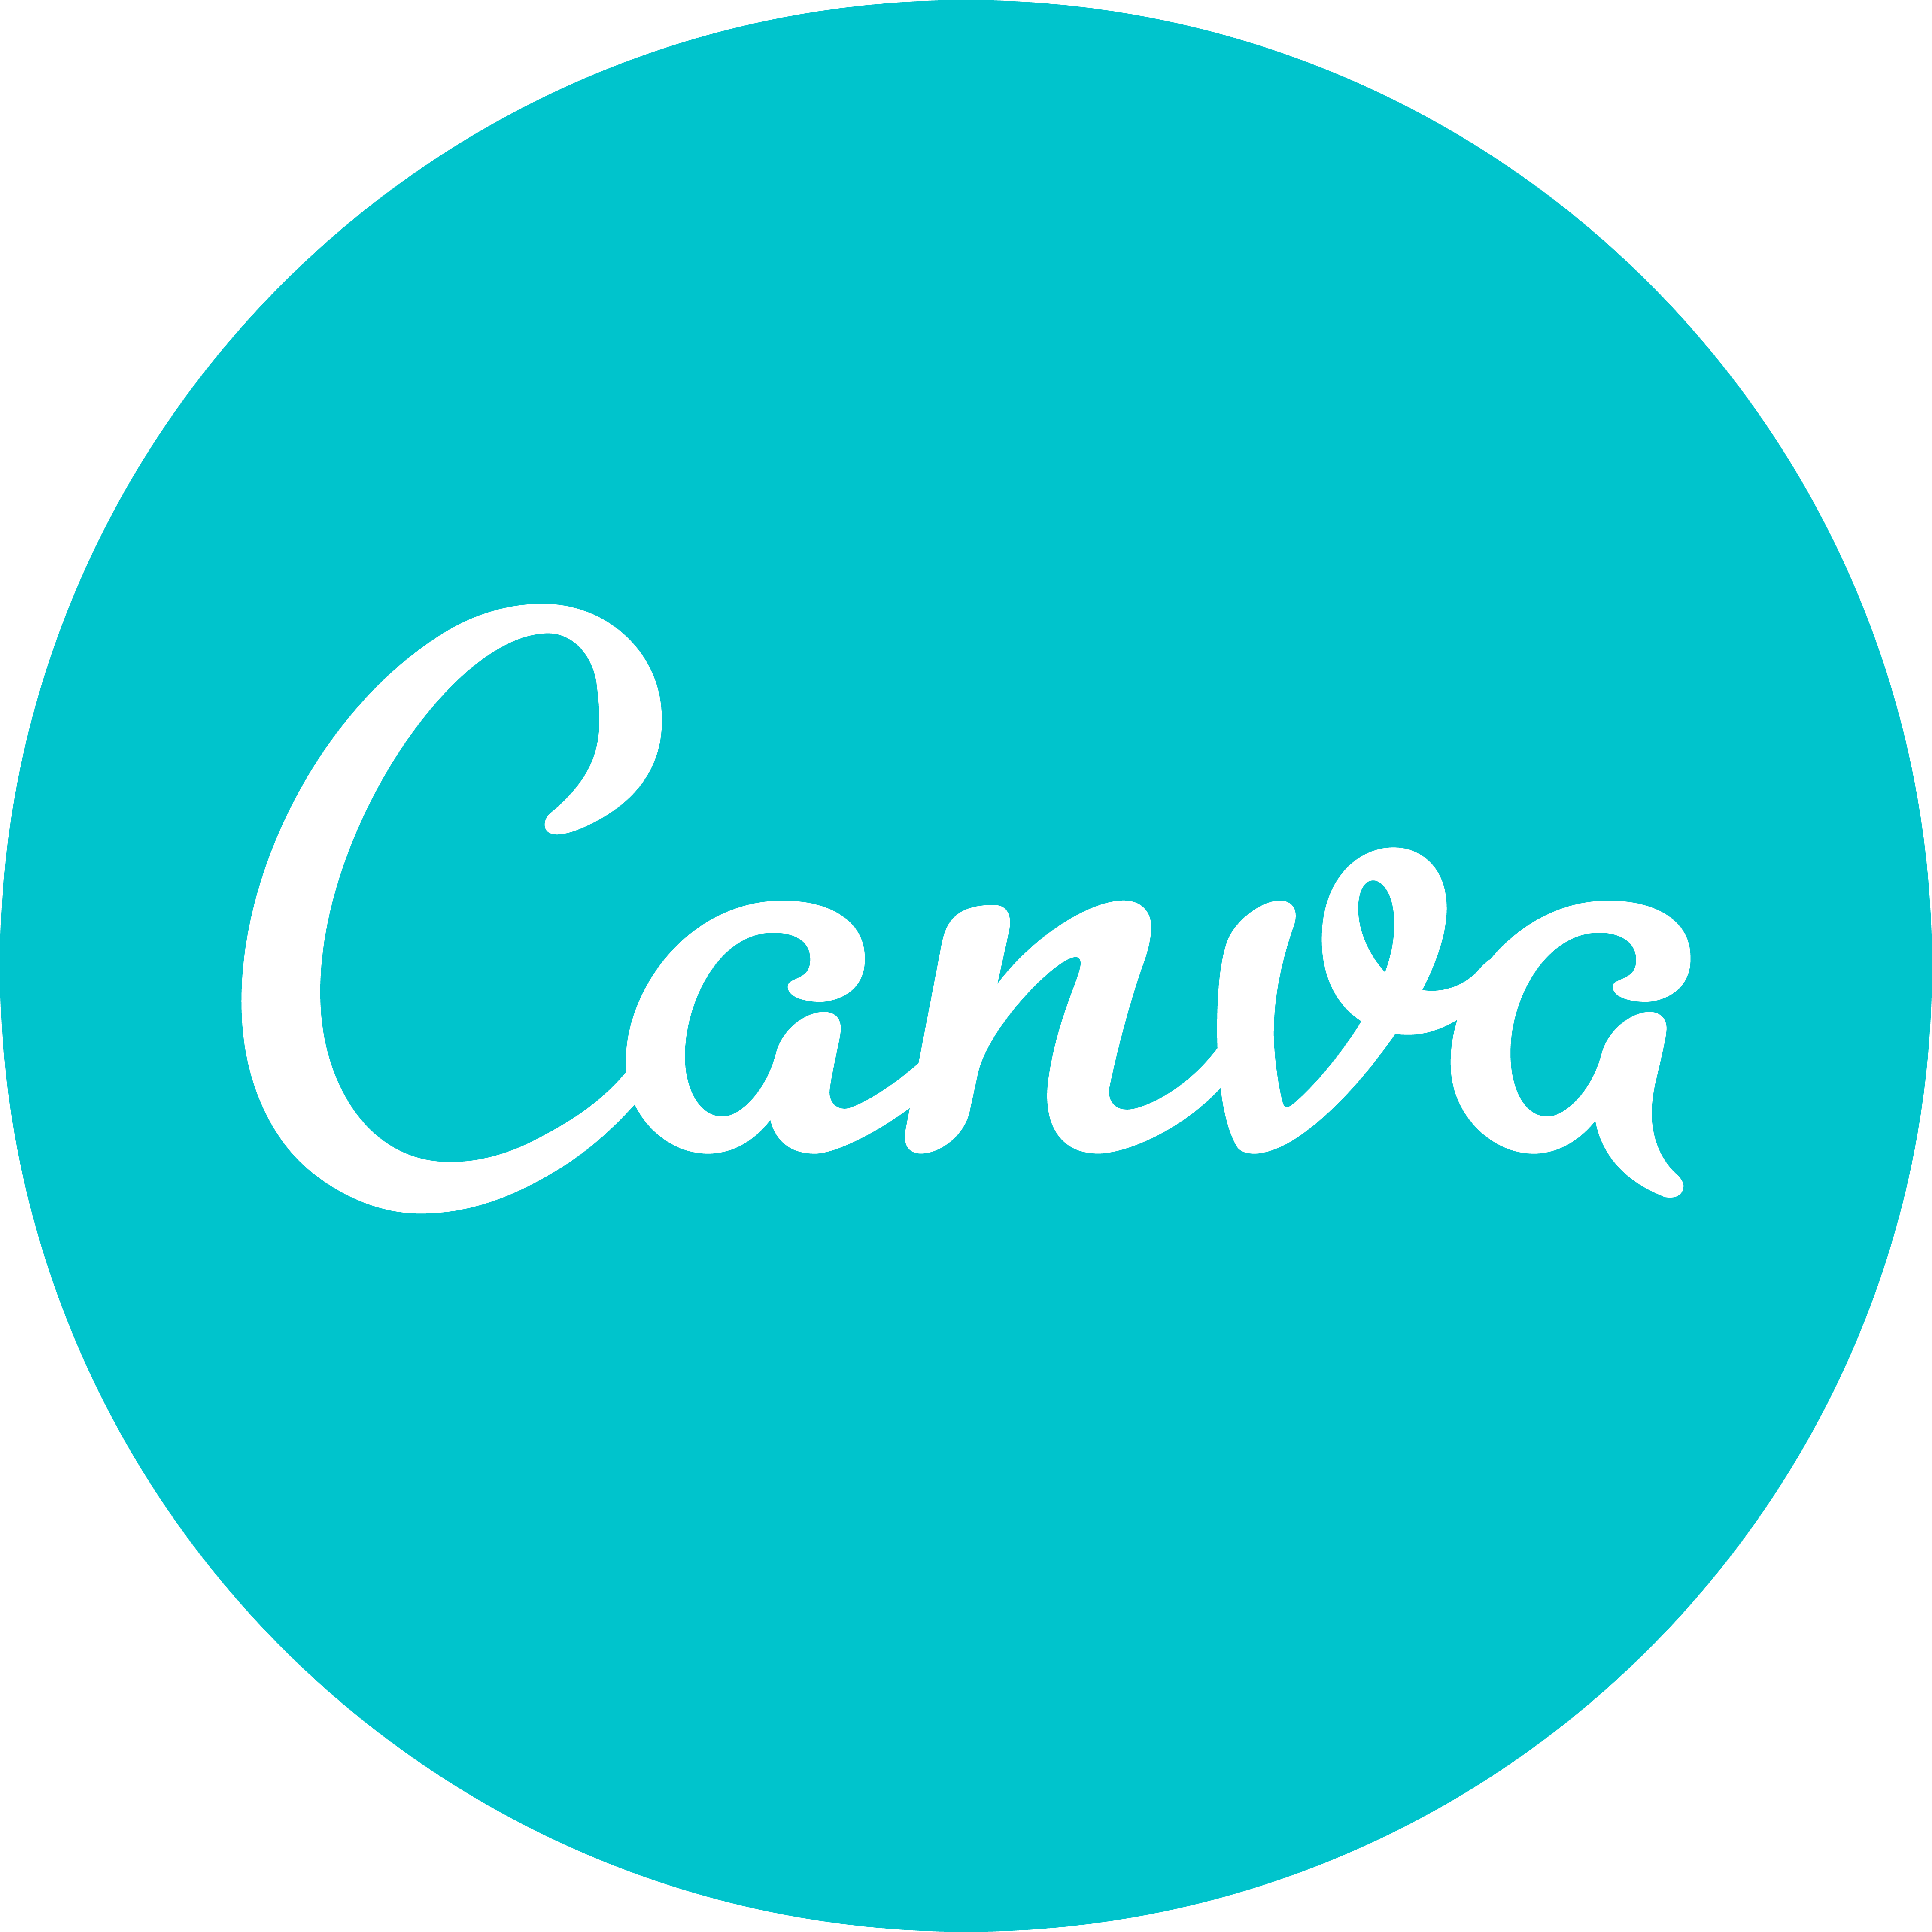 Логотип Canva